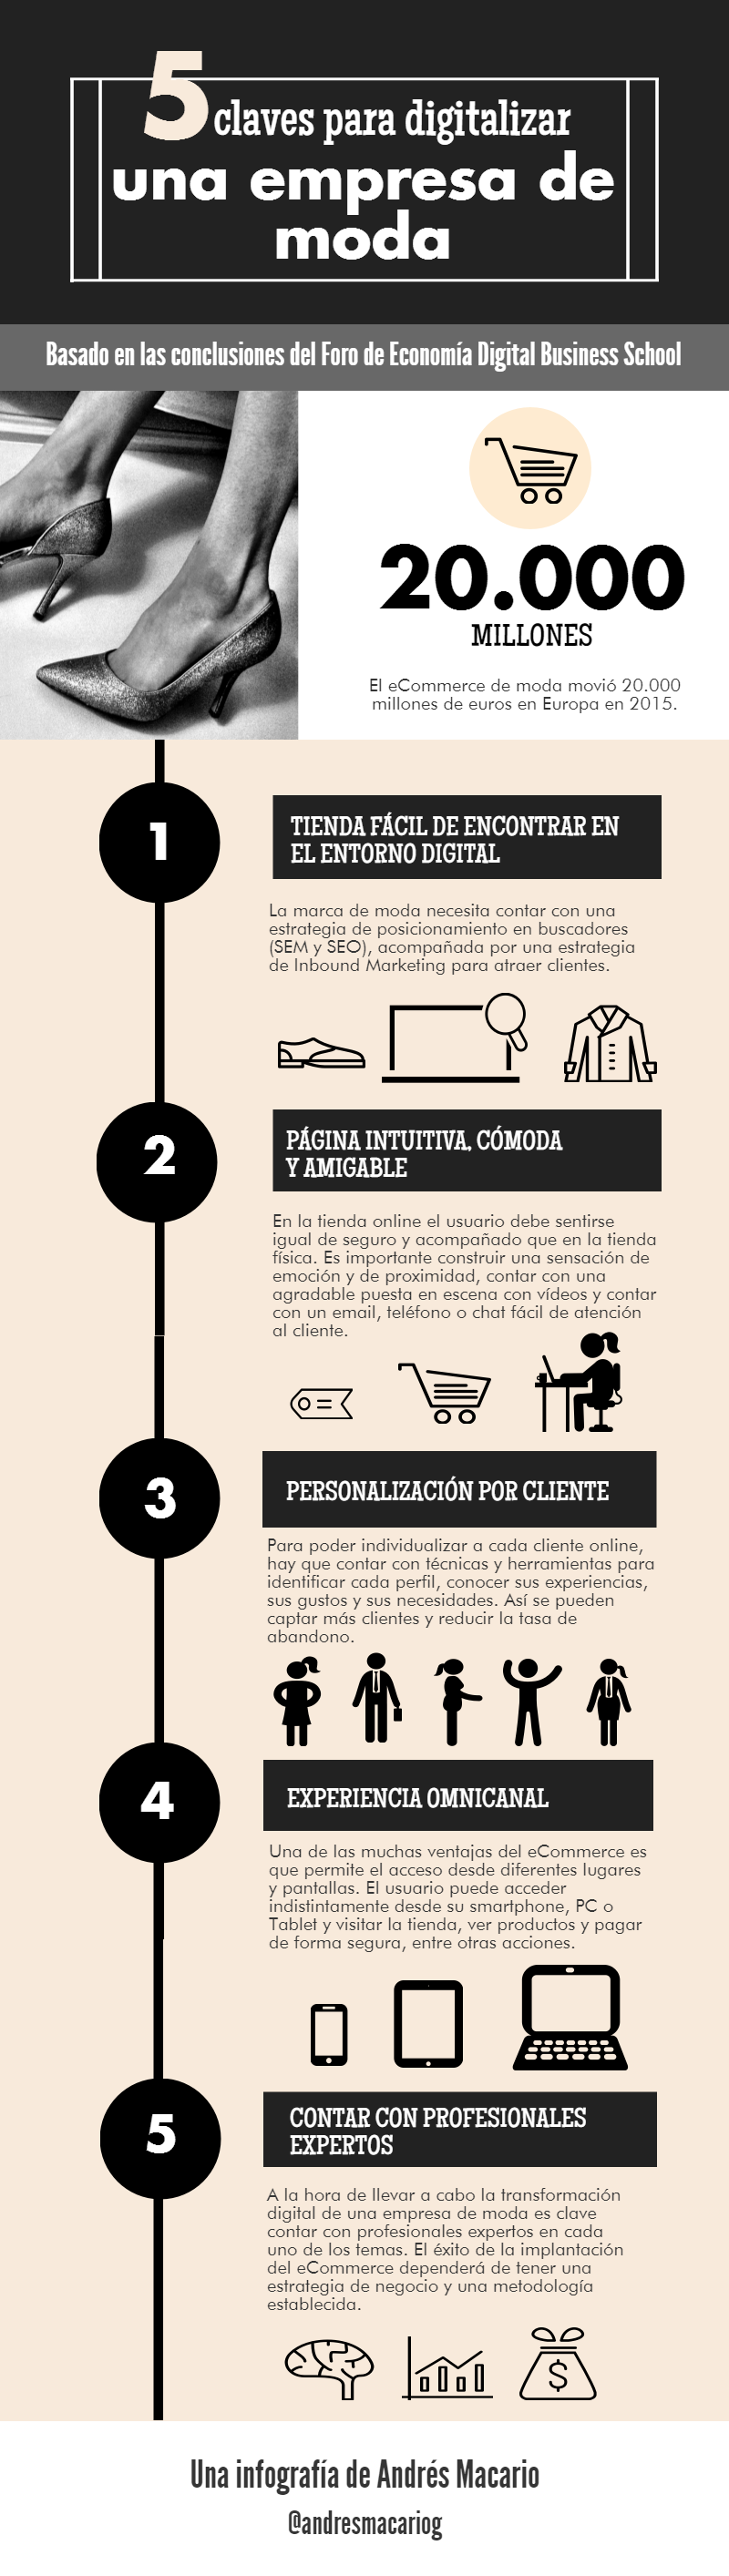 5 claves para digitalizar una empresa moda - Infografia Andres Macario